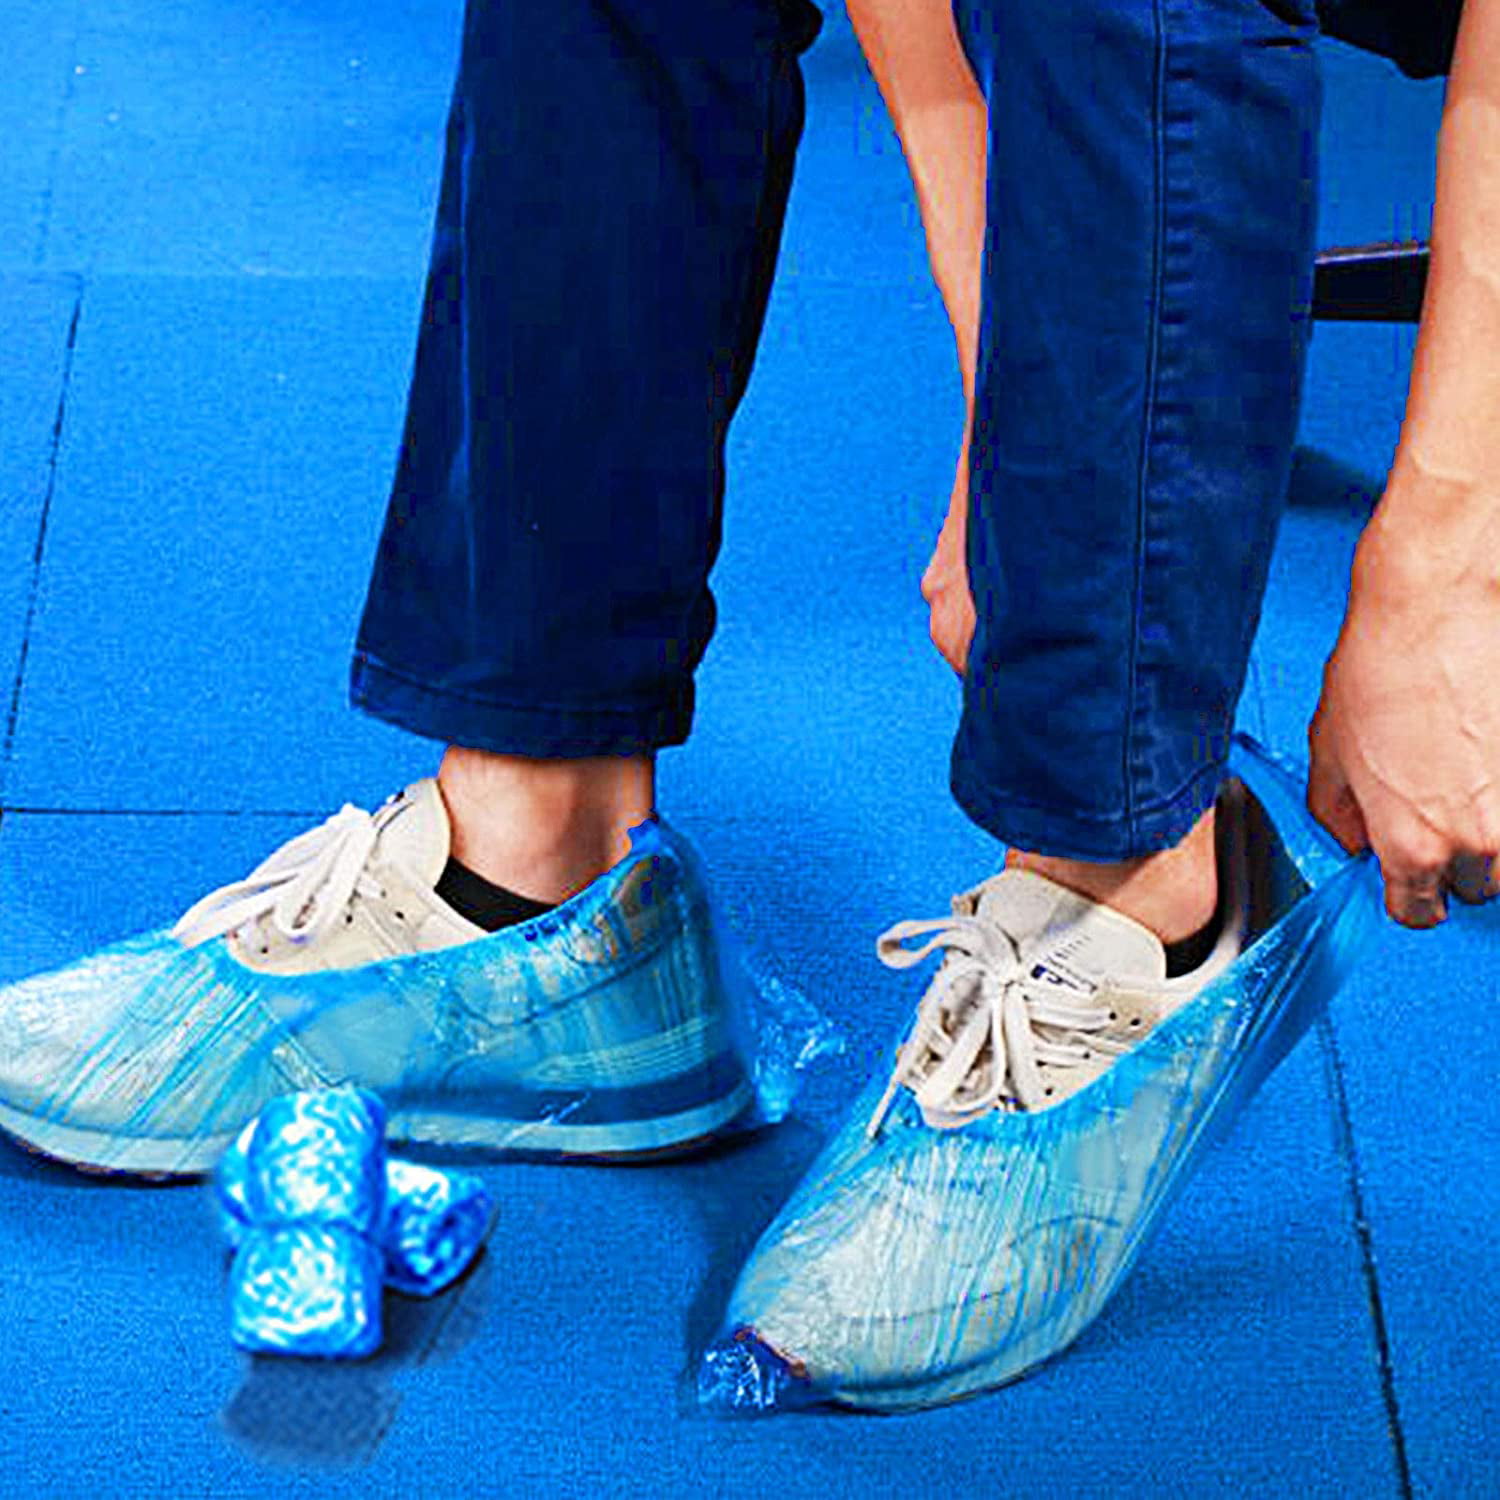 100x Disposable BLUE PVC Plastic Over Shoes Shoe Boot Covers Carpet Protectors 